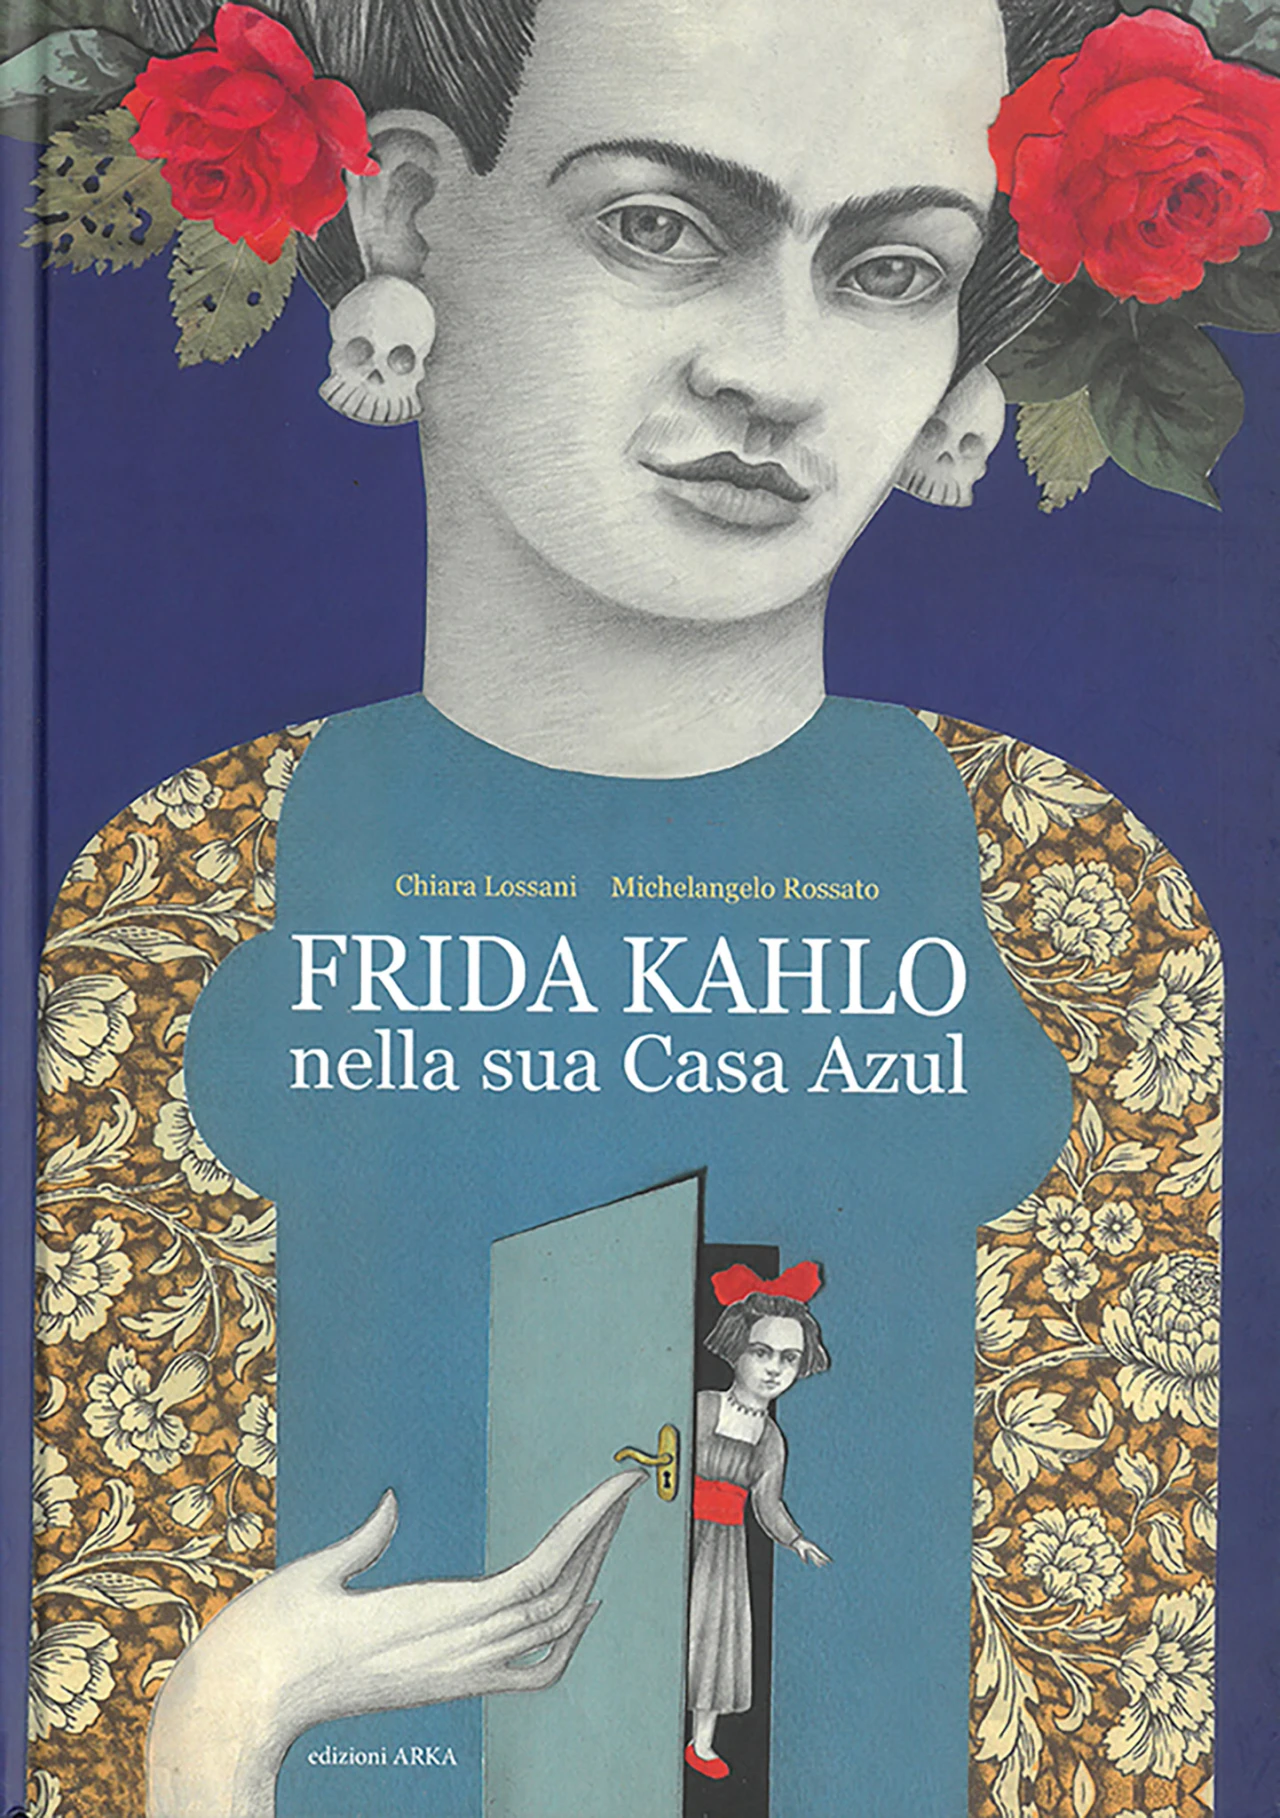 078-donne-FridaKahlo.jpg